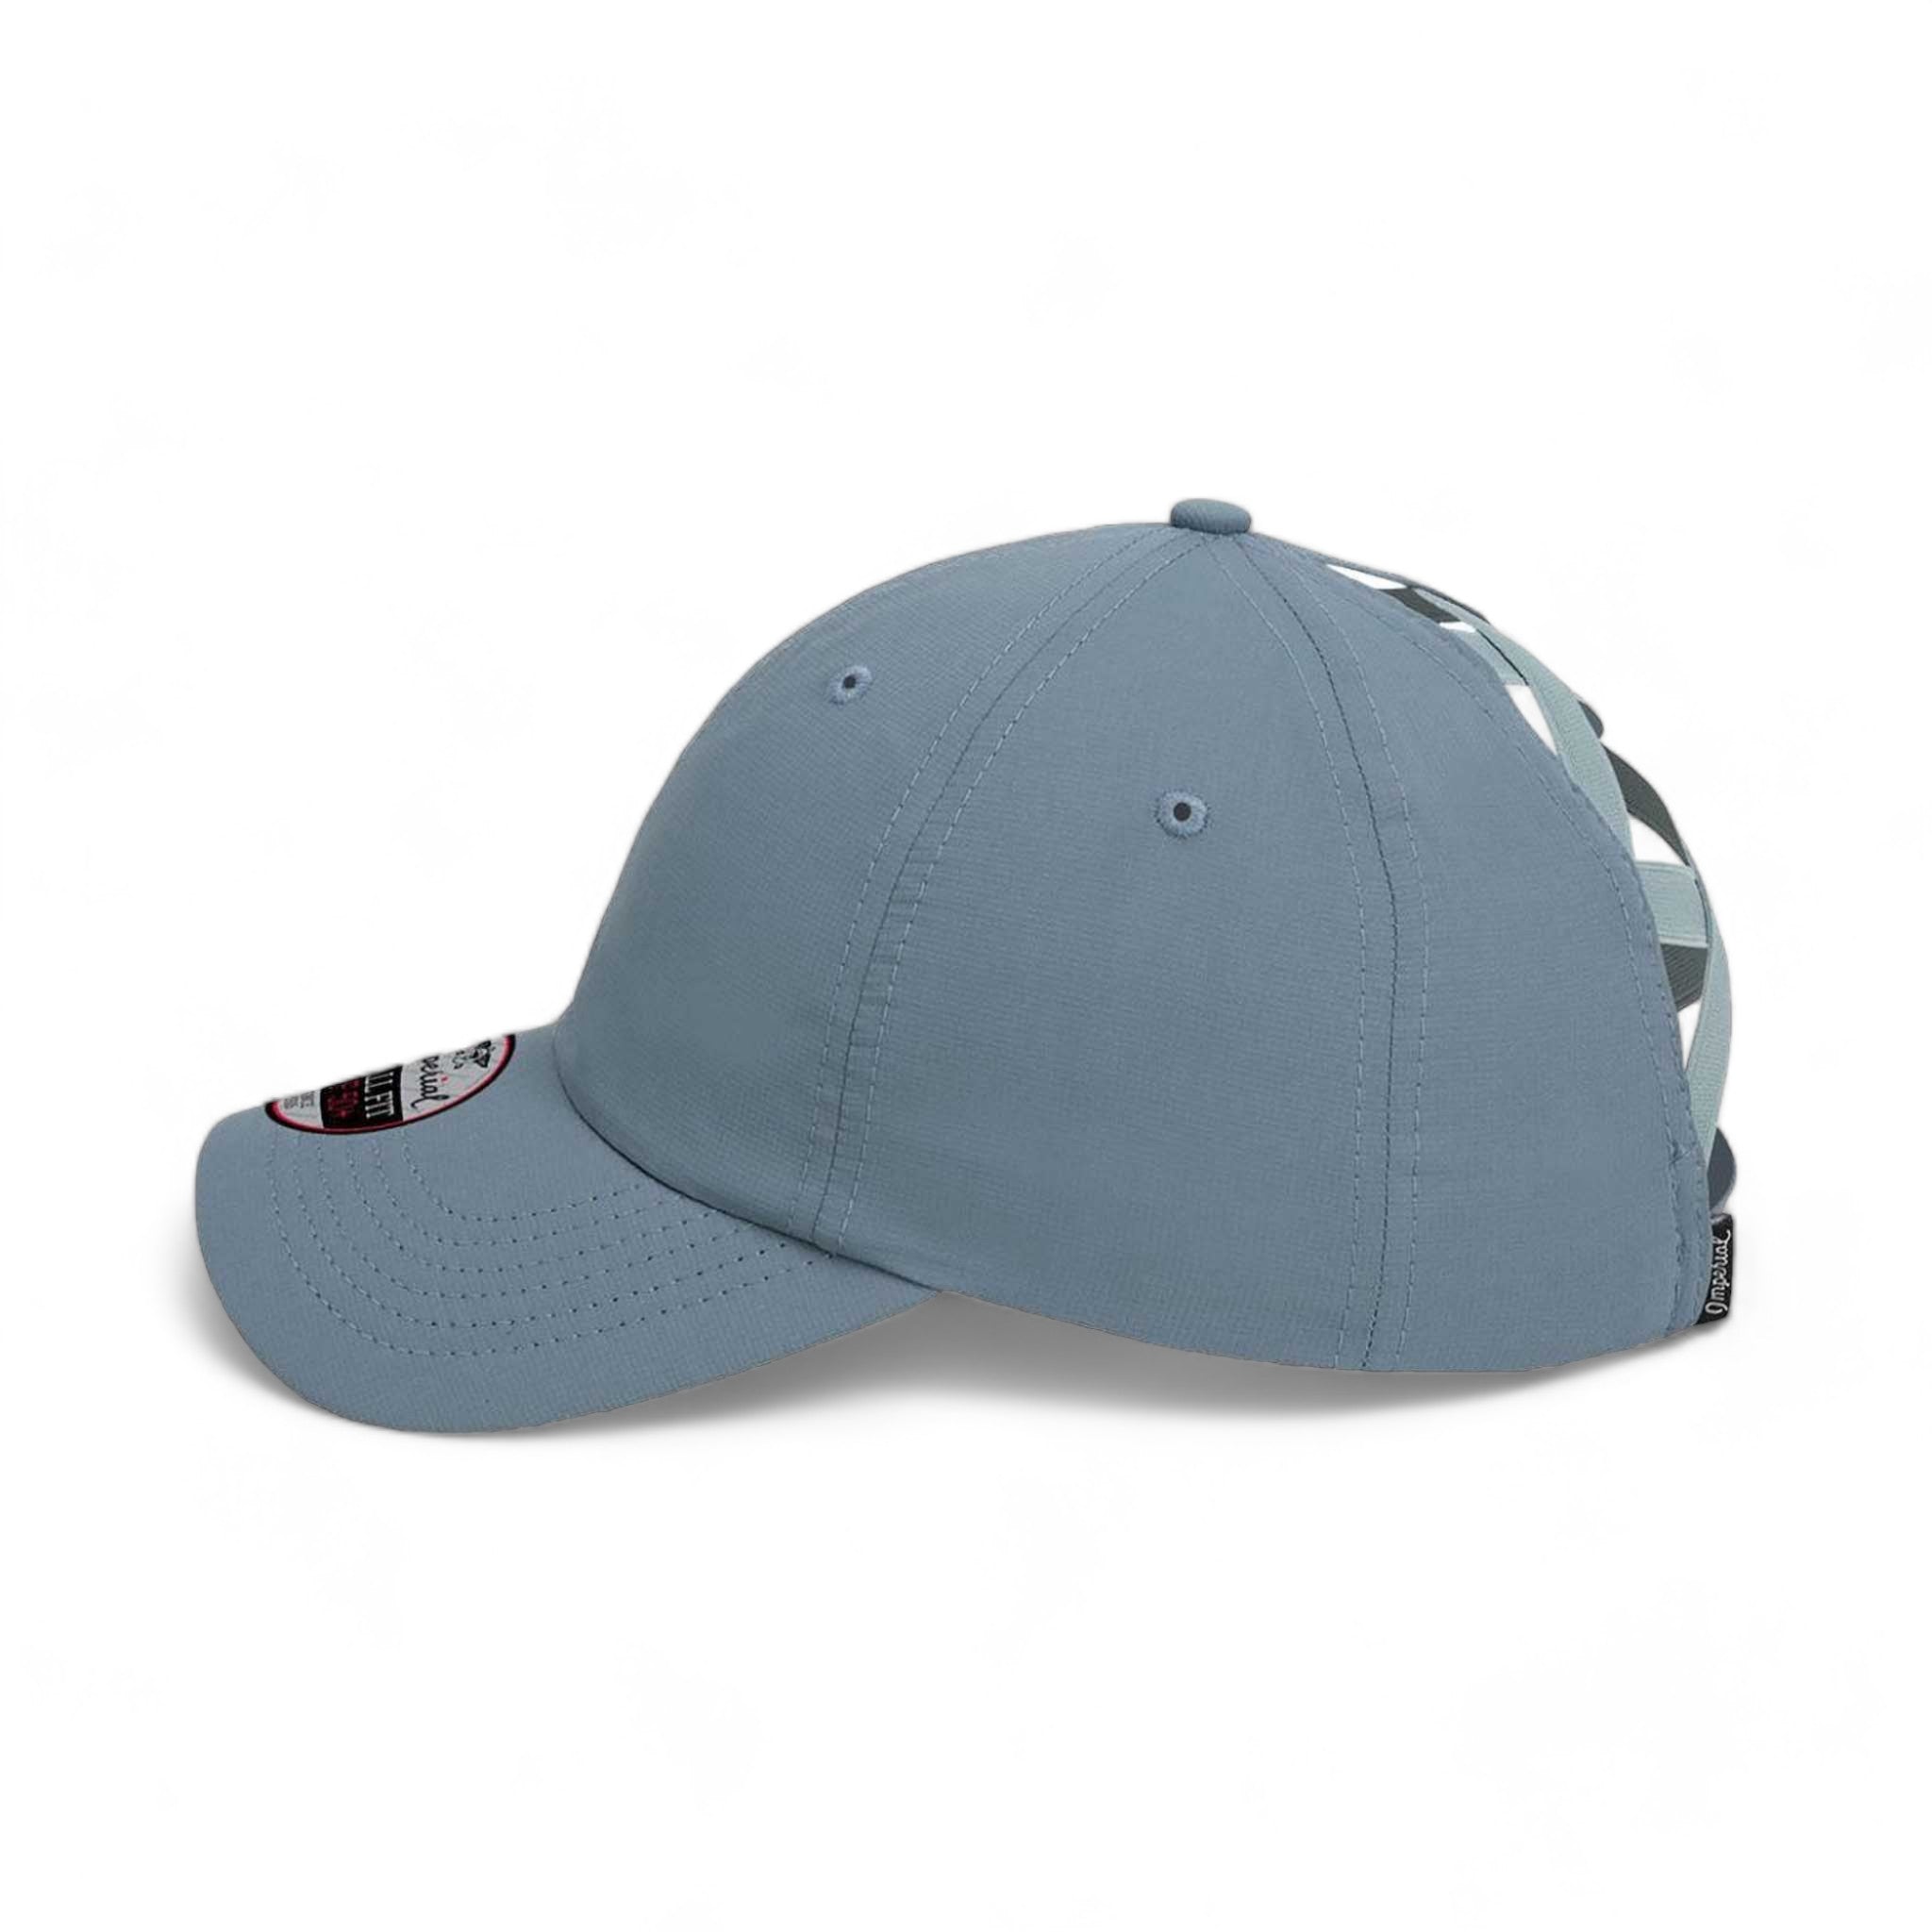 Side view of Imperial L338 custom hat in breaker blue